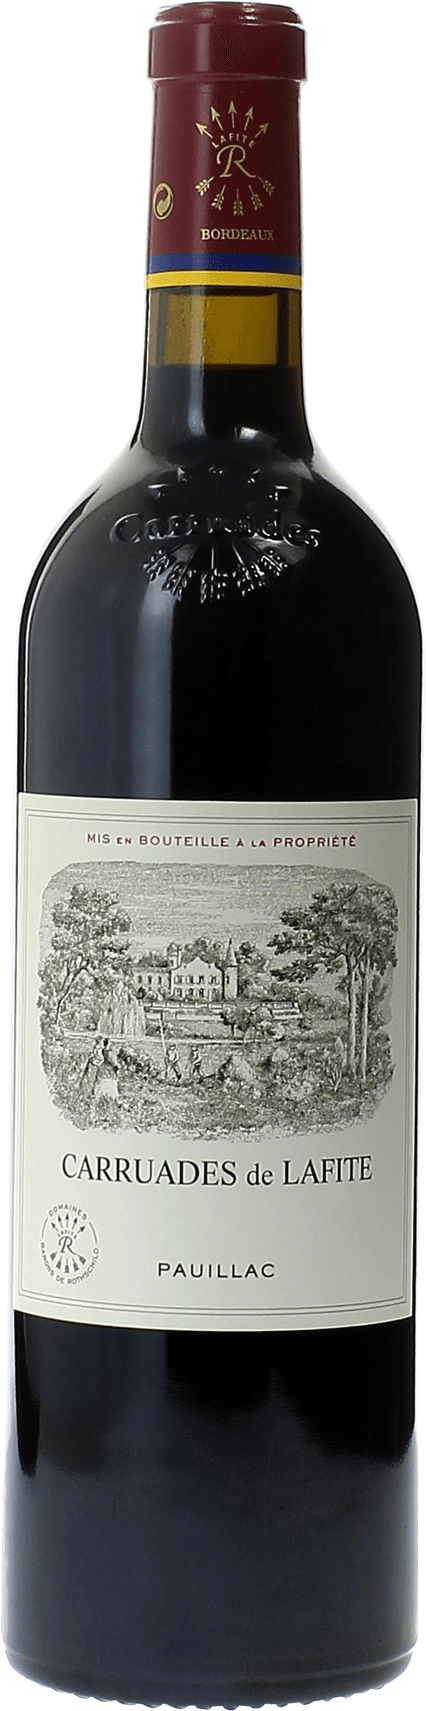 Carruades de lafite 1997 2me vin de LAFITE ROTHSCHILD Pauillac, Bordeaux rouge